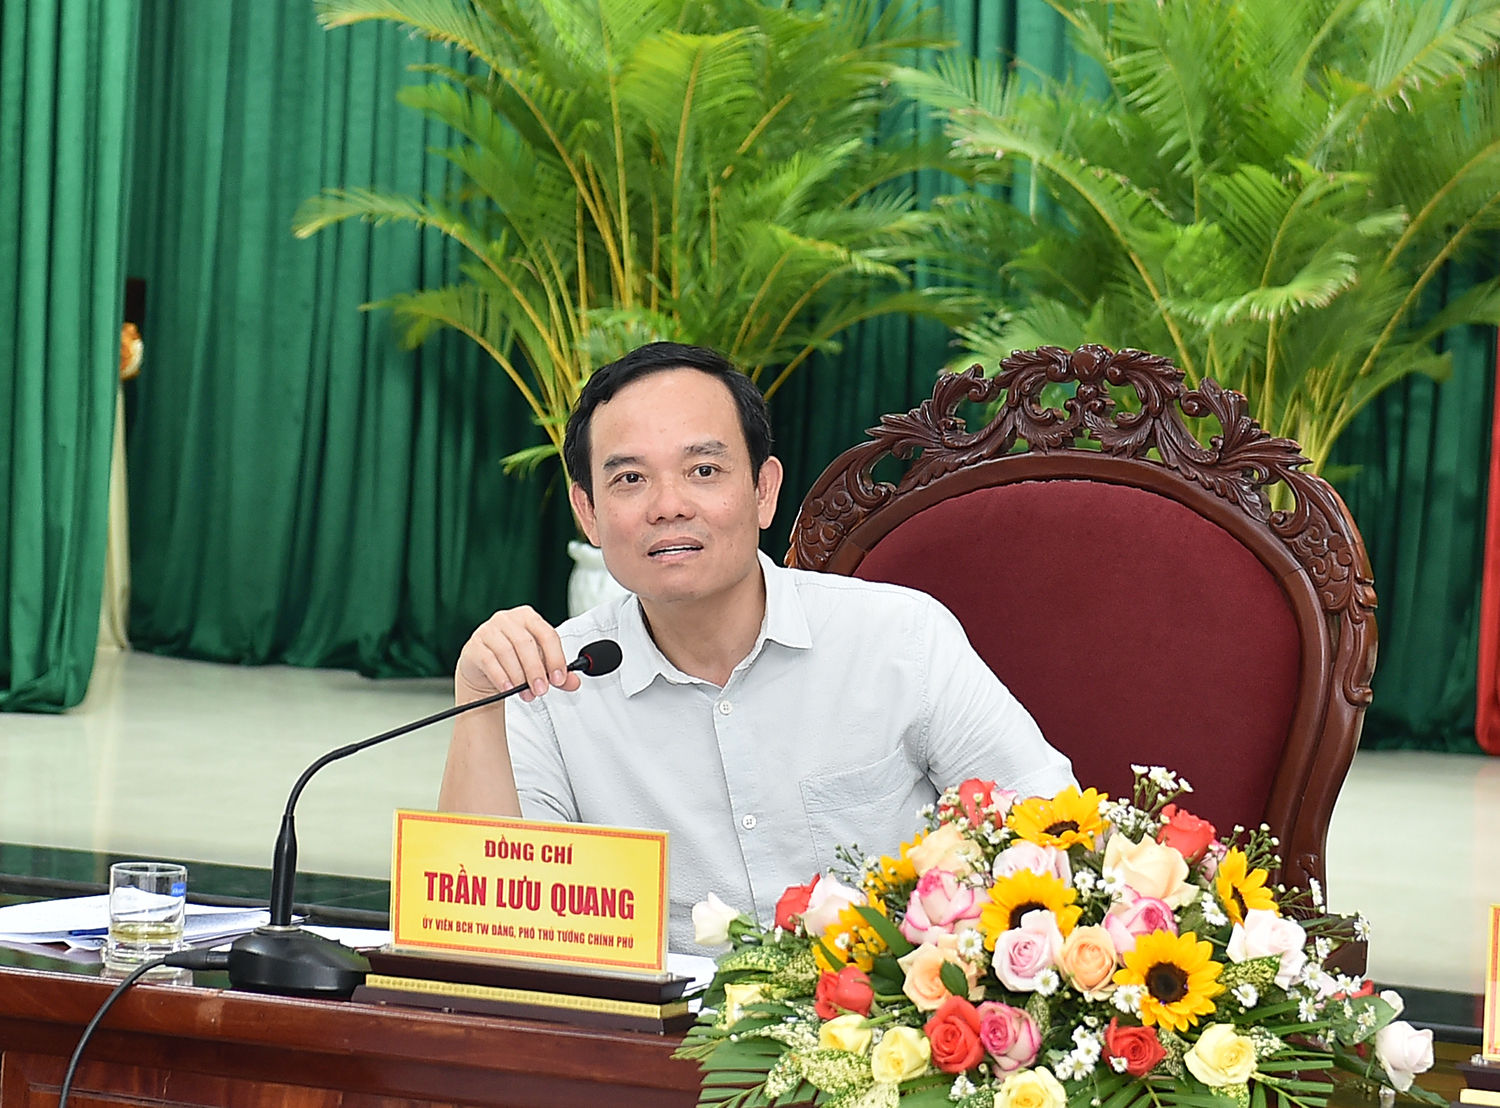 Phó Thủ tướng Trần Lưu Quang khảo sát 3 chương trình mục tiêu quốc gia tại Bình Định - Ảnh 1.